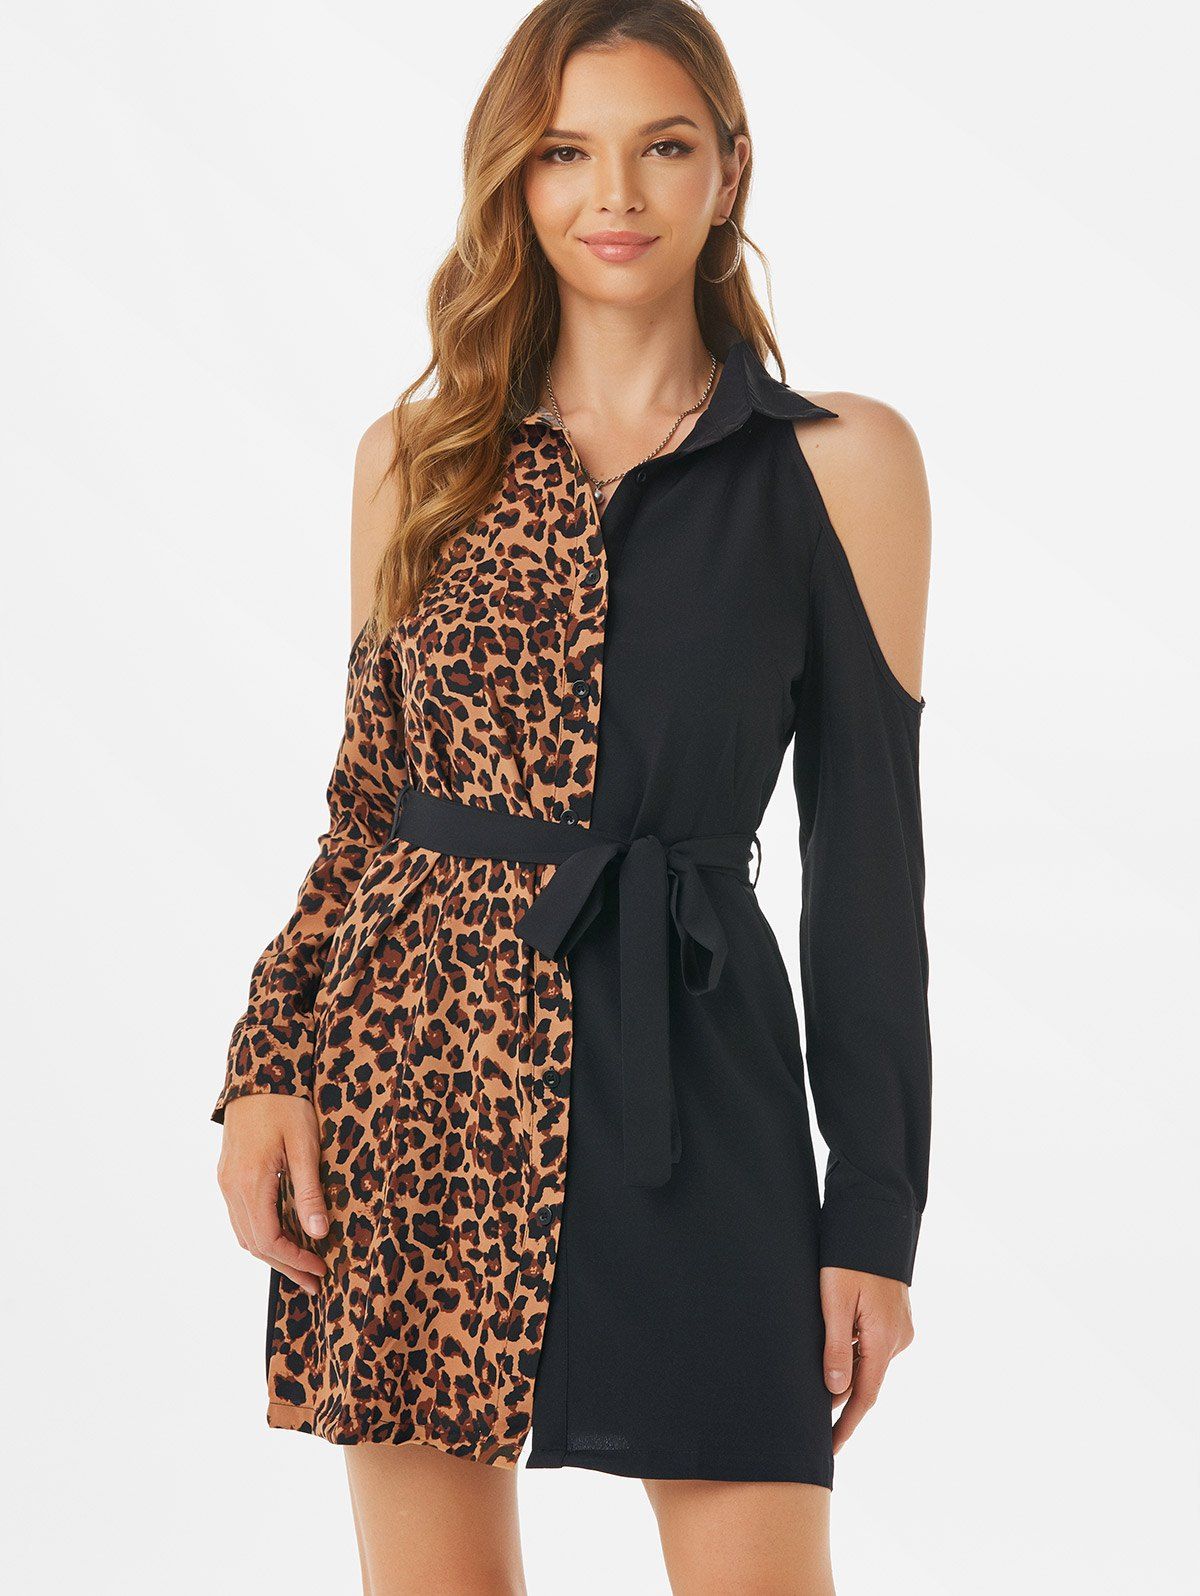 Leopard Cold Shoulder Belted Dress - multicolor L